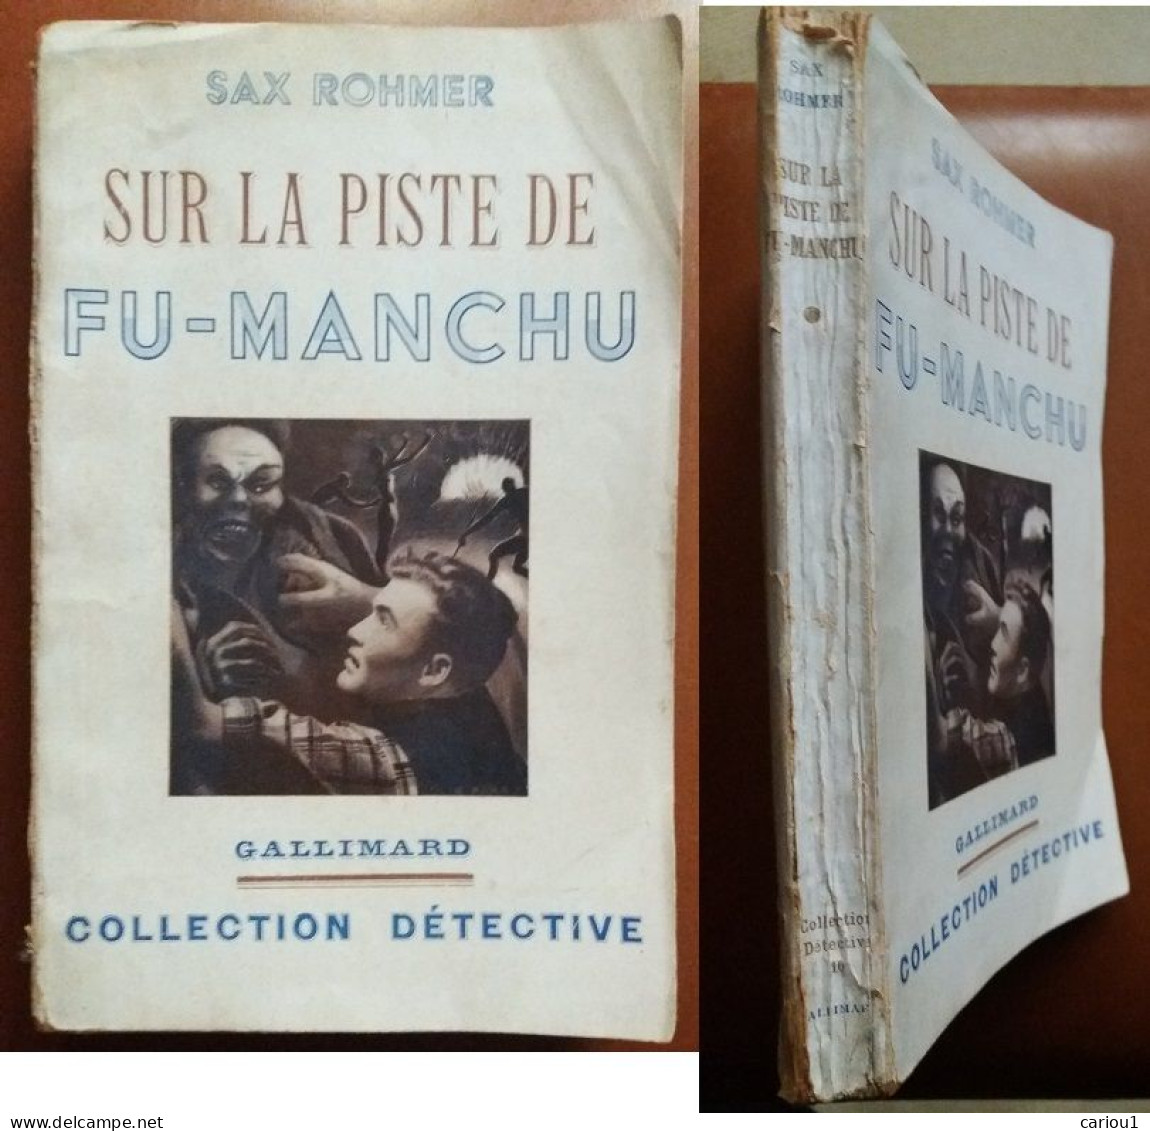 C1 Sax ROHMER - SUR LA PISTE DE FU MANCHU EO 1938 The Trail Of Fu Manchu SF PORT INCLUS France - Avant 1950